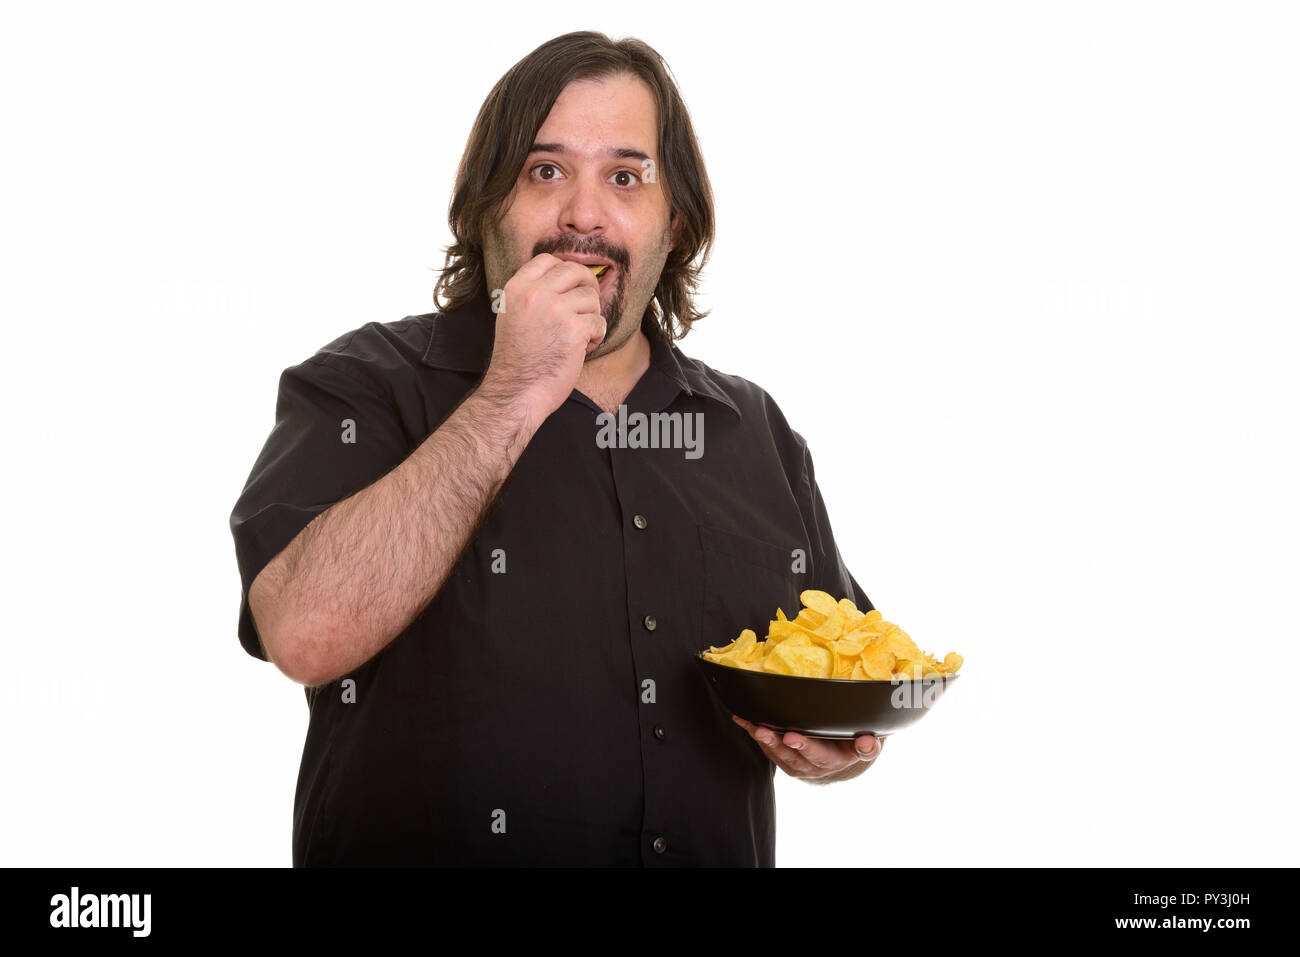 Fat Man eating et holding bowl of chips Banque D'Images